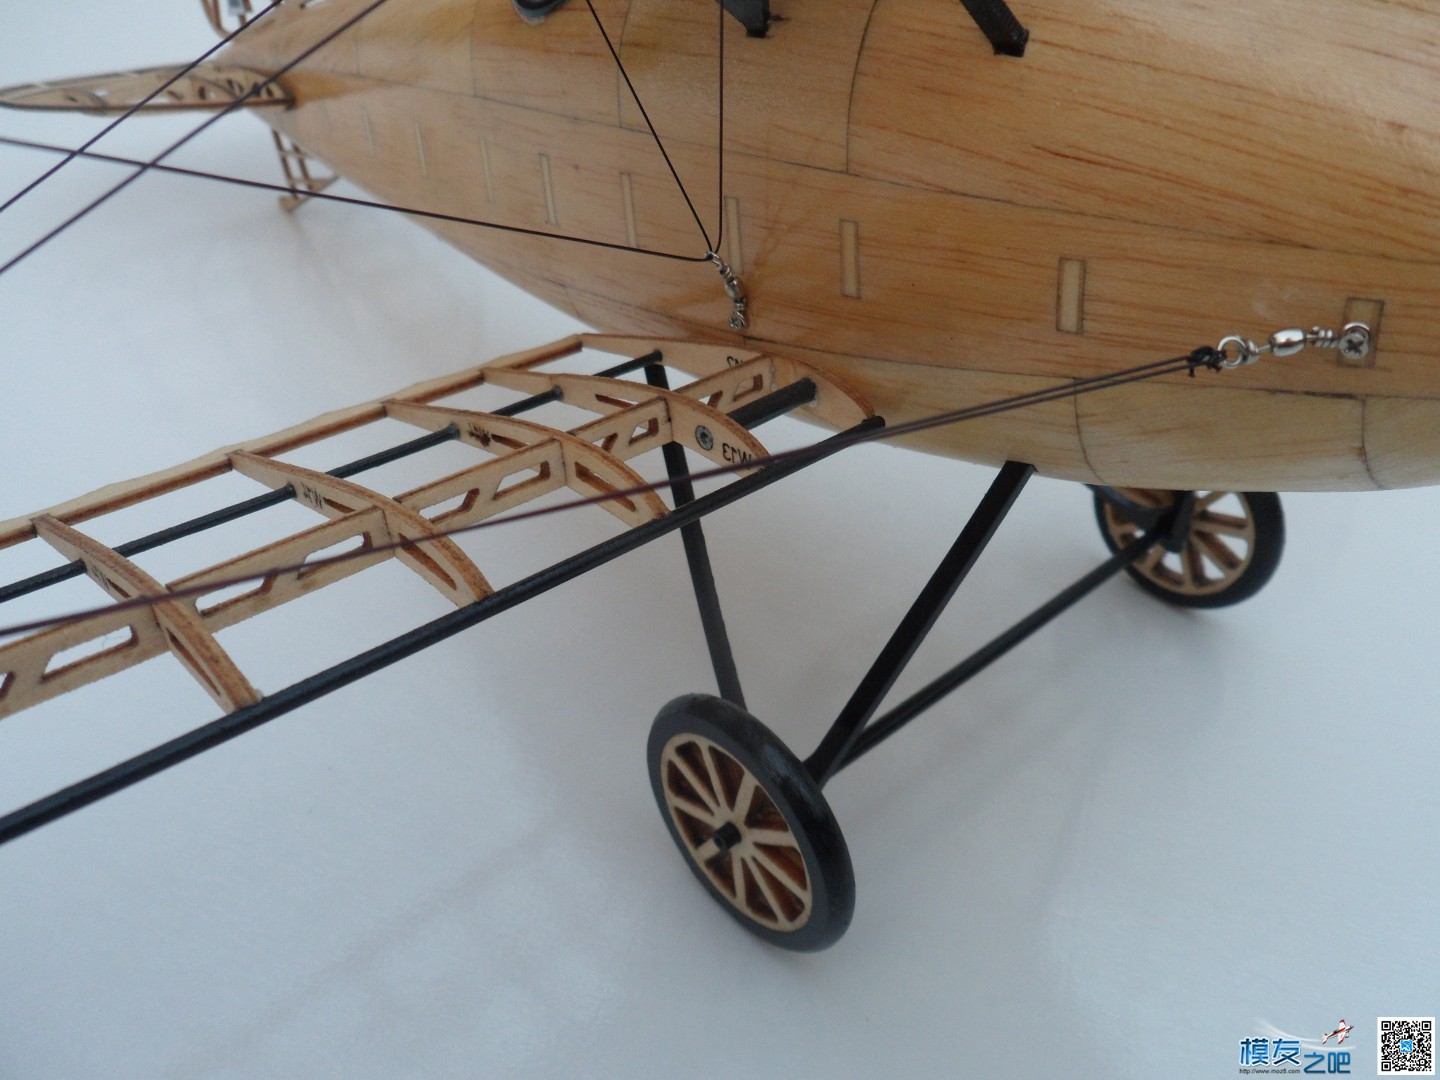 复古航模小飞机摆件 摆件,复古 作者:流年 1153 